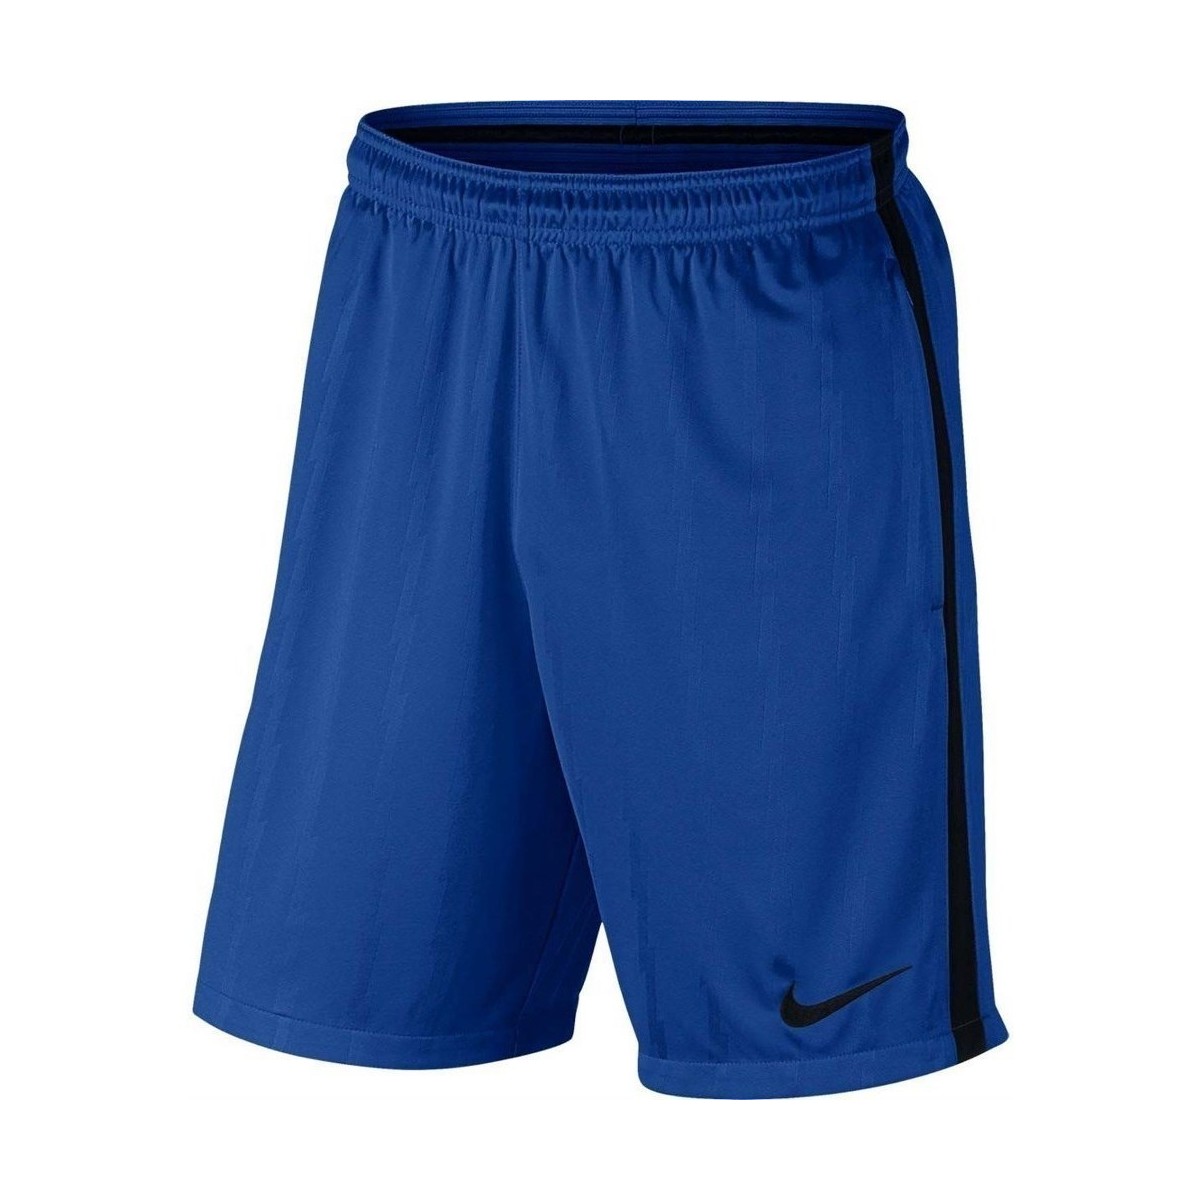 Textil Muži Tříčtvrteční kalhoty Nike Squad Jaq KZ Tmavě modrá